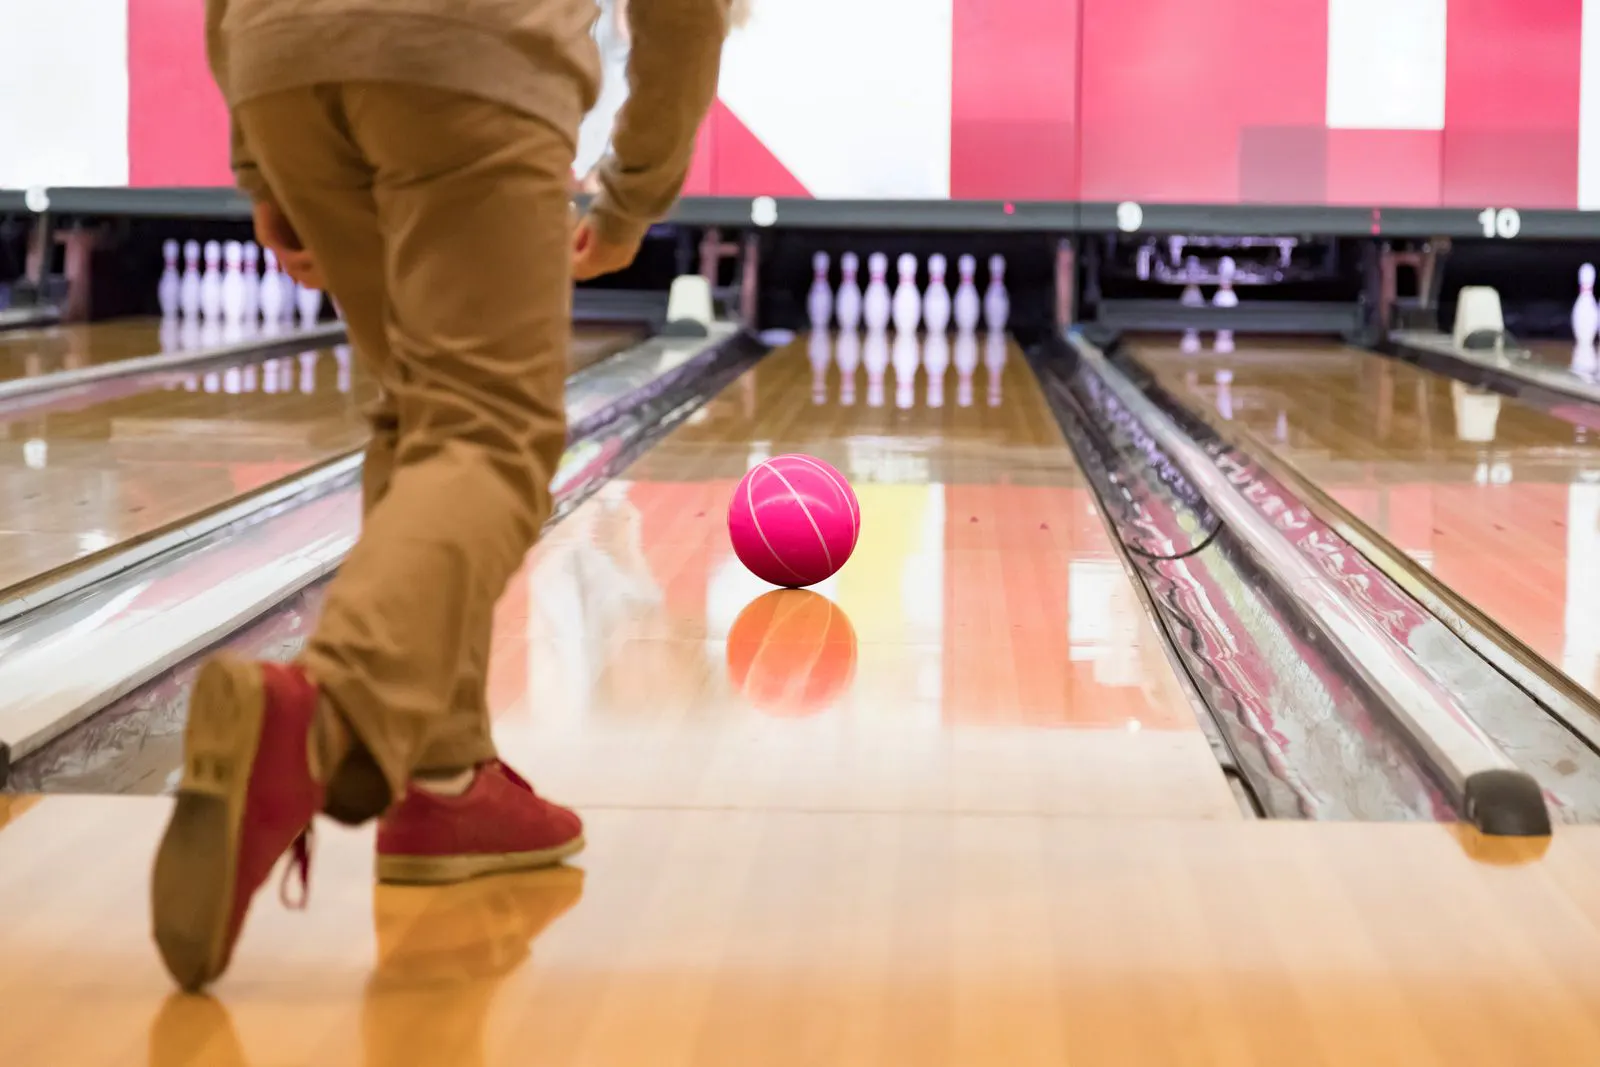 A man throws a bowling ball down a bowling alley